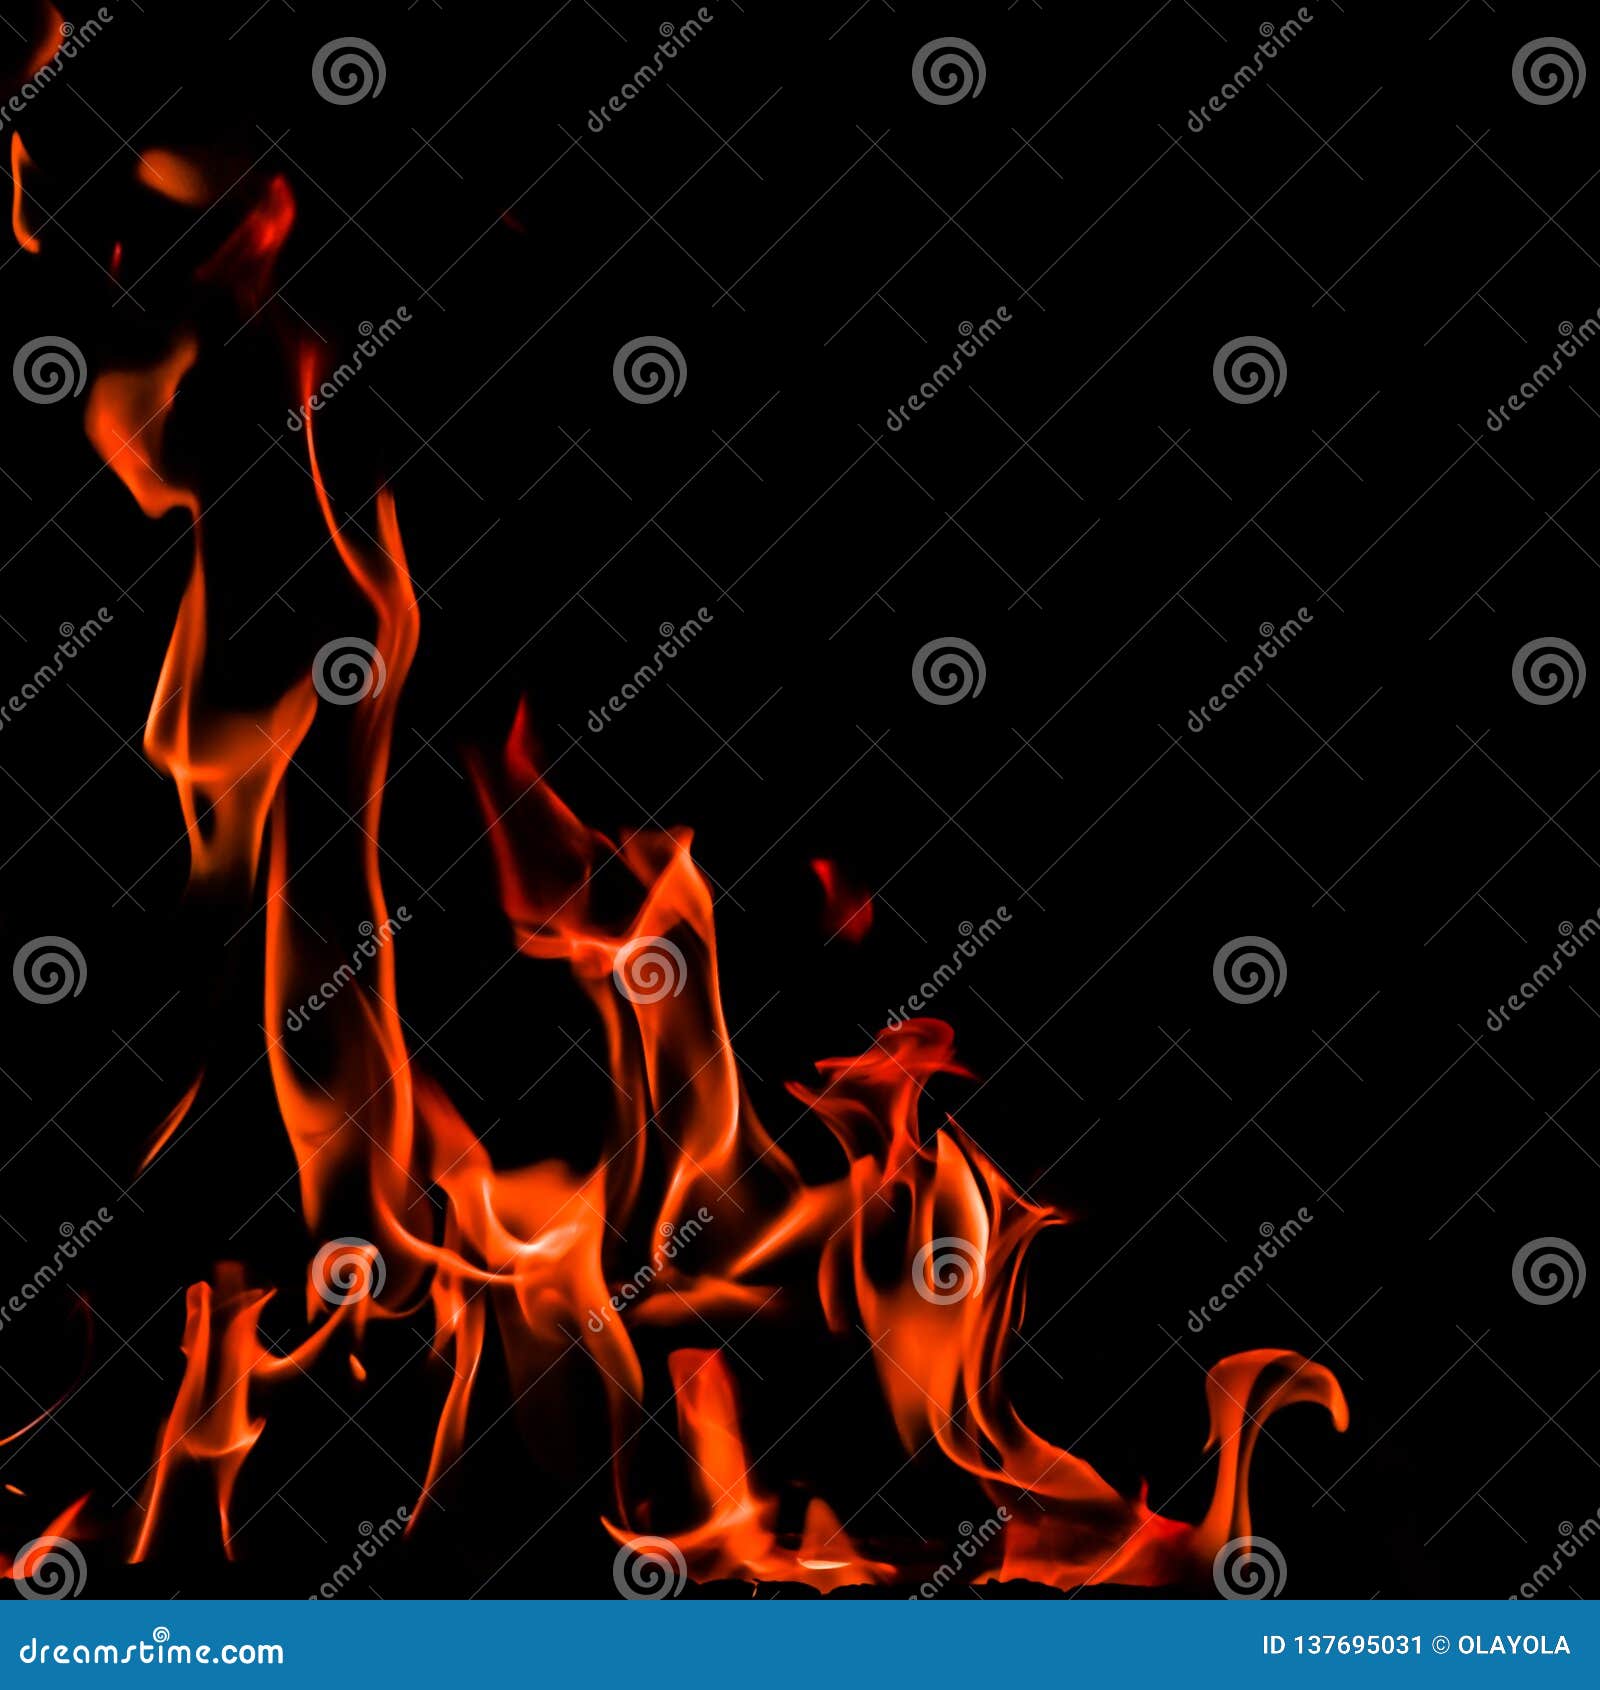 Gợi lên cảm giác mạnh mẽ, đầy quyền lực với hình ảnh ngọn lửa cháy rực trên nền đen. Là sự lựa chọn tuyệt vời cho những tác phẩm về chủ đề liên quan đến năng lượng và sức mạnh.